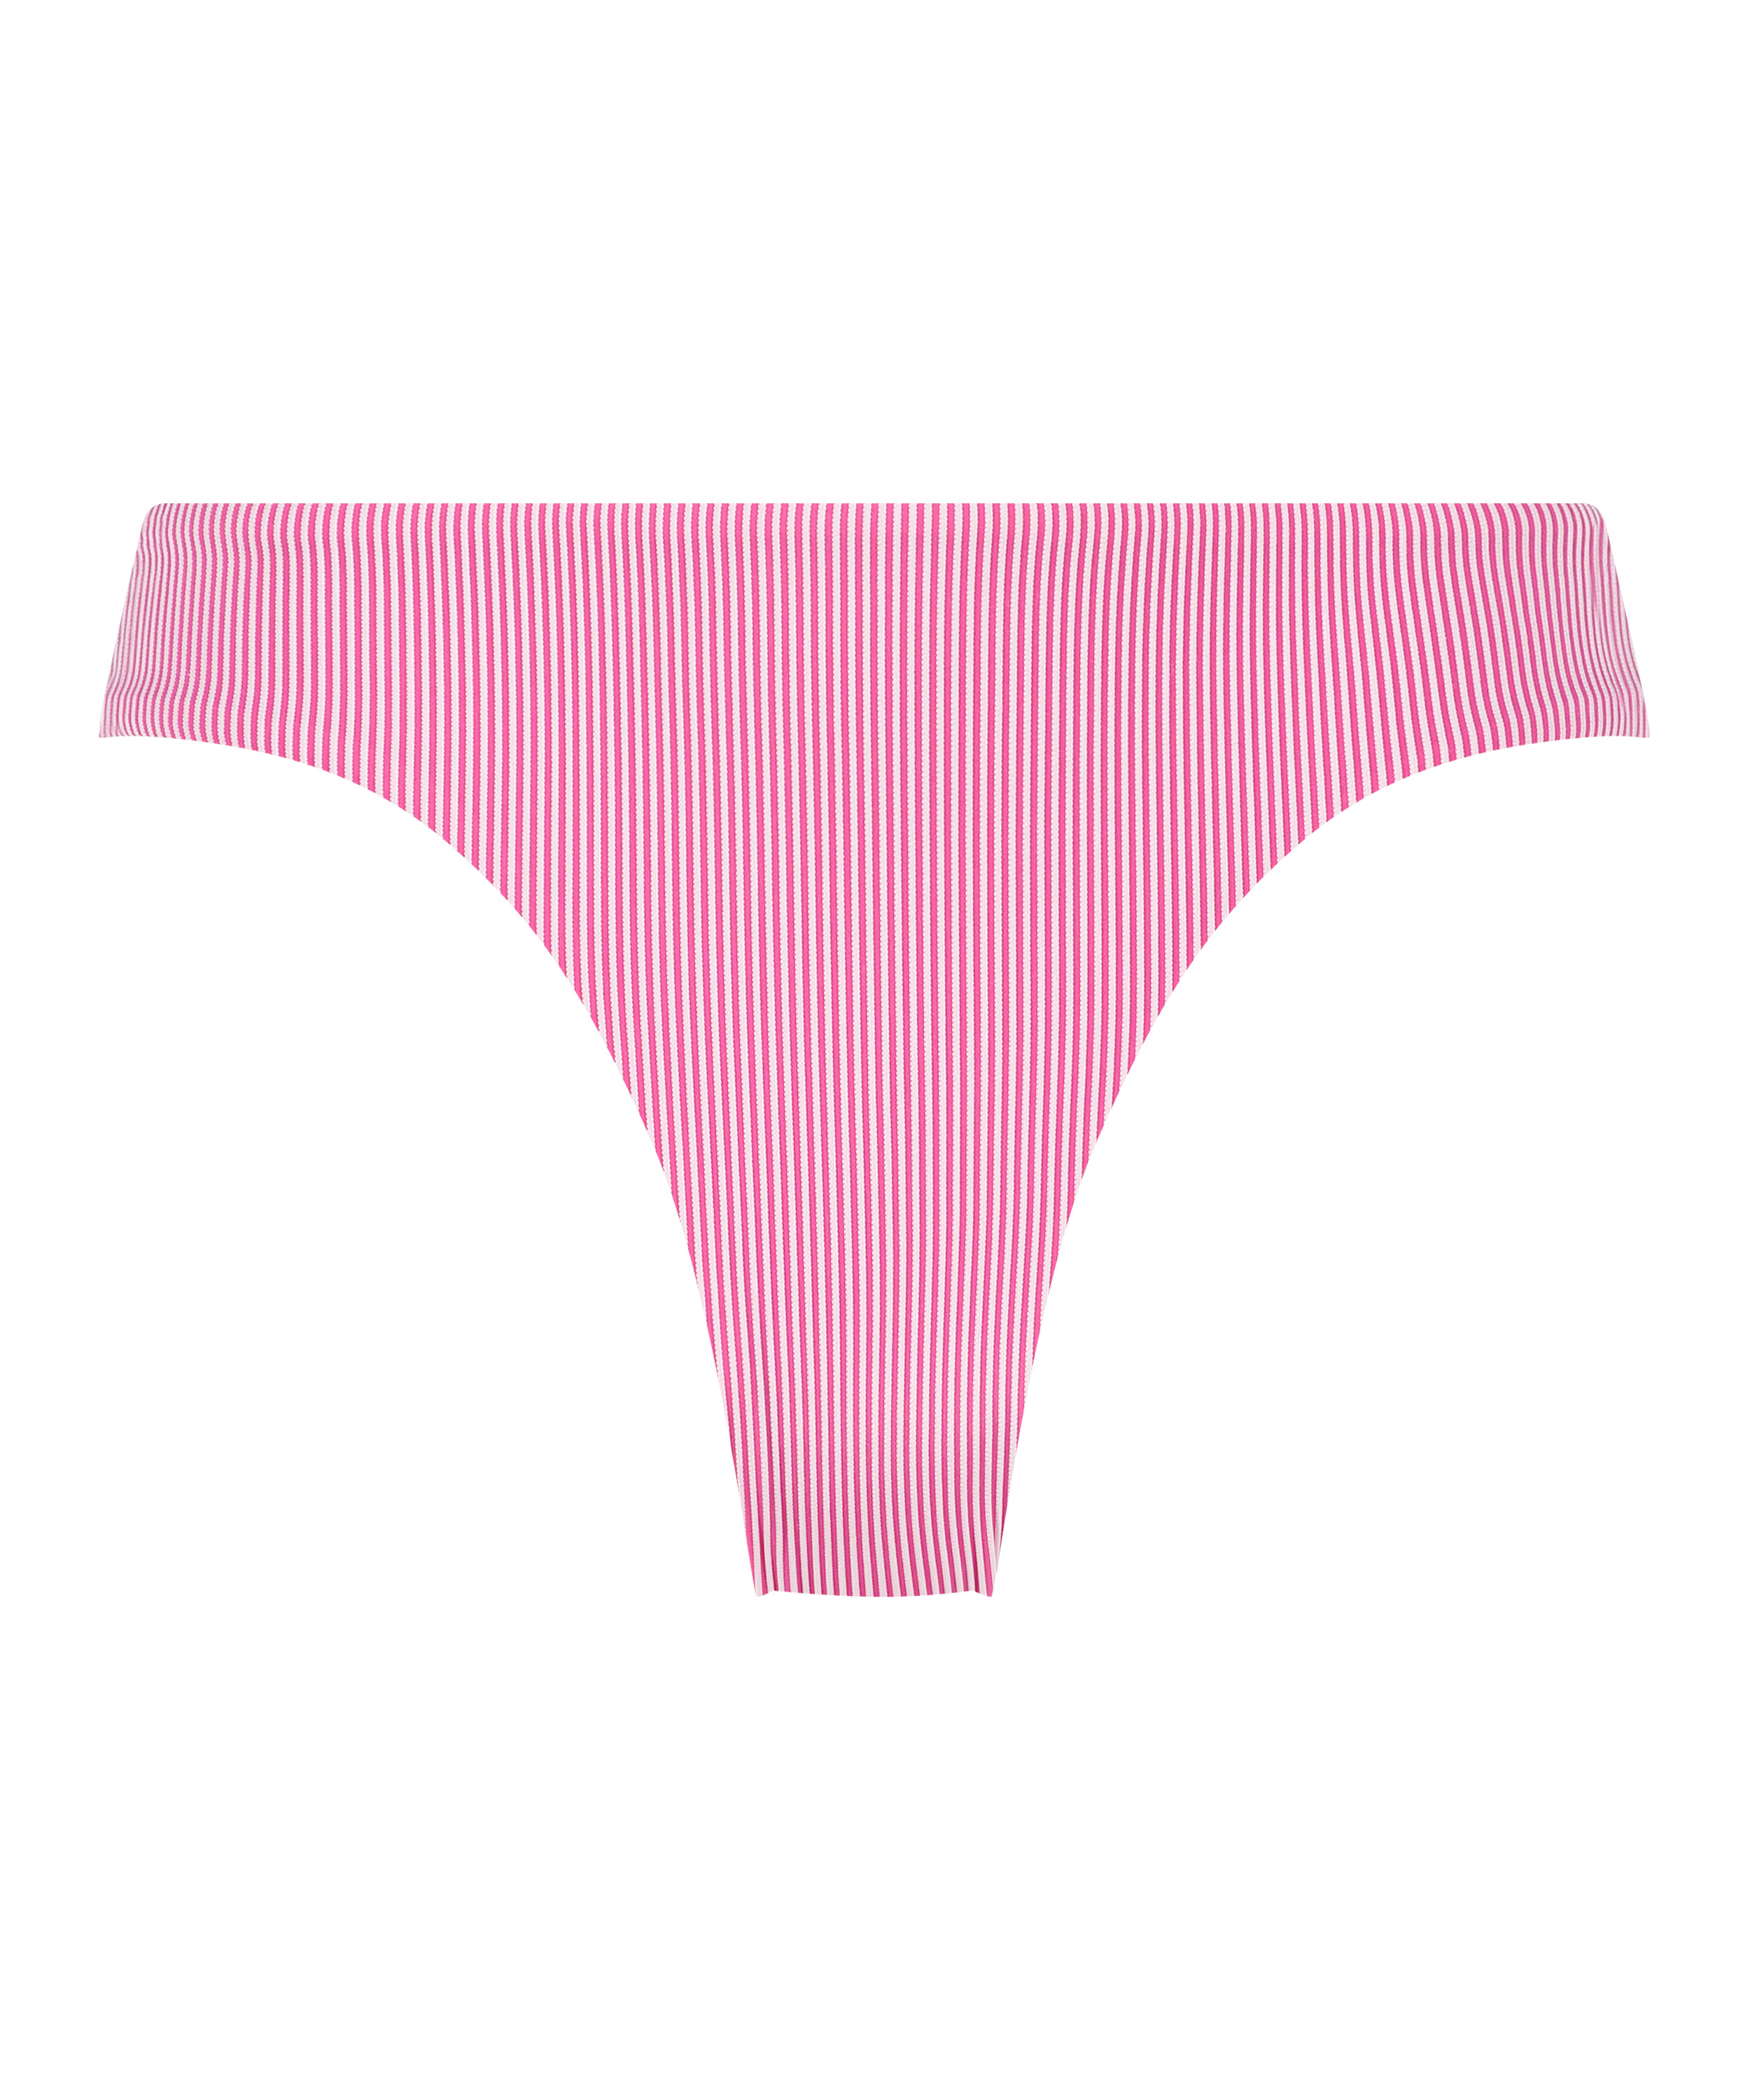 Rio Bikinitrusse Fiji, pink, main